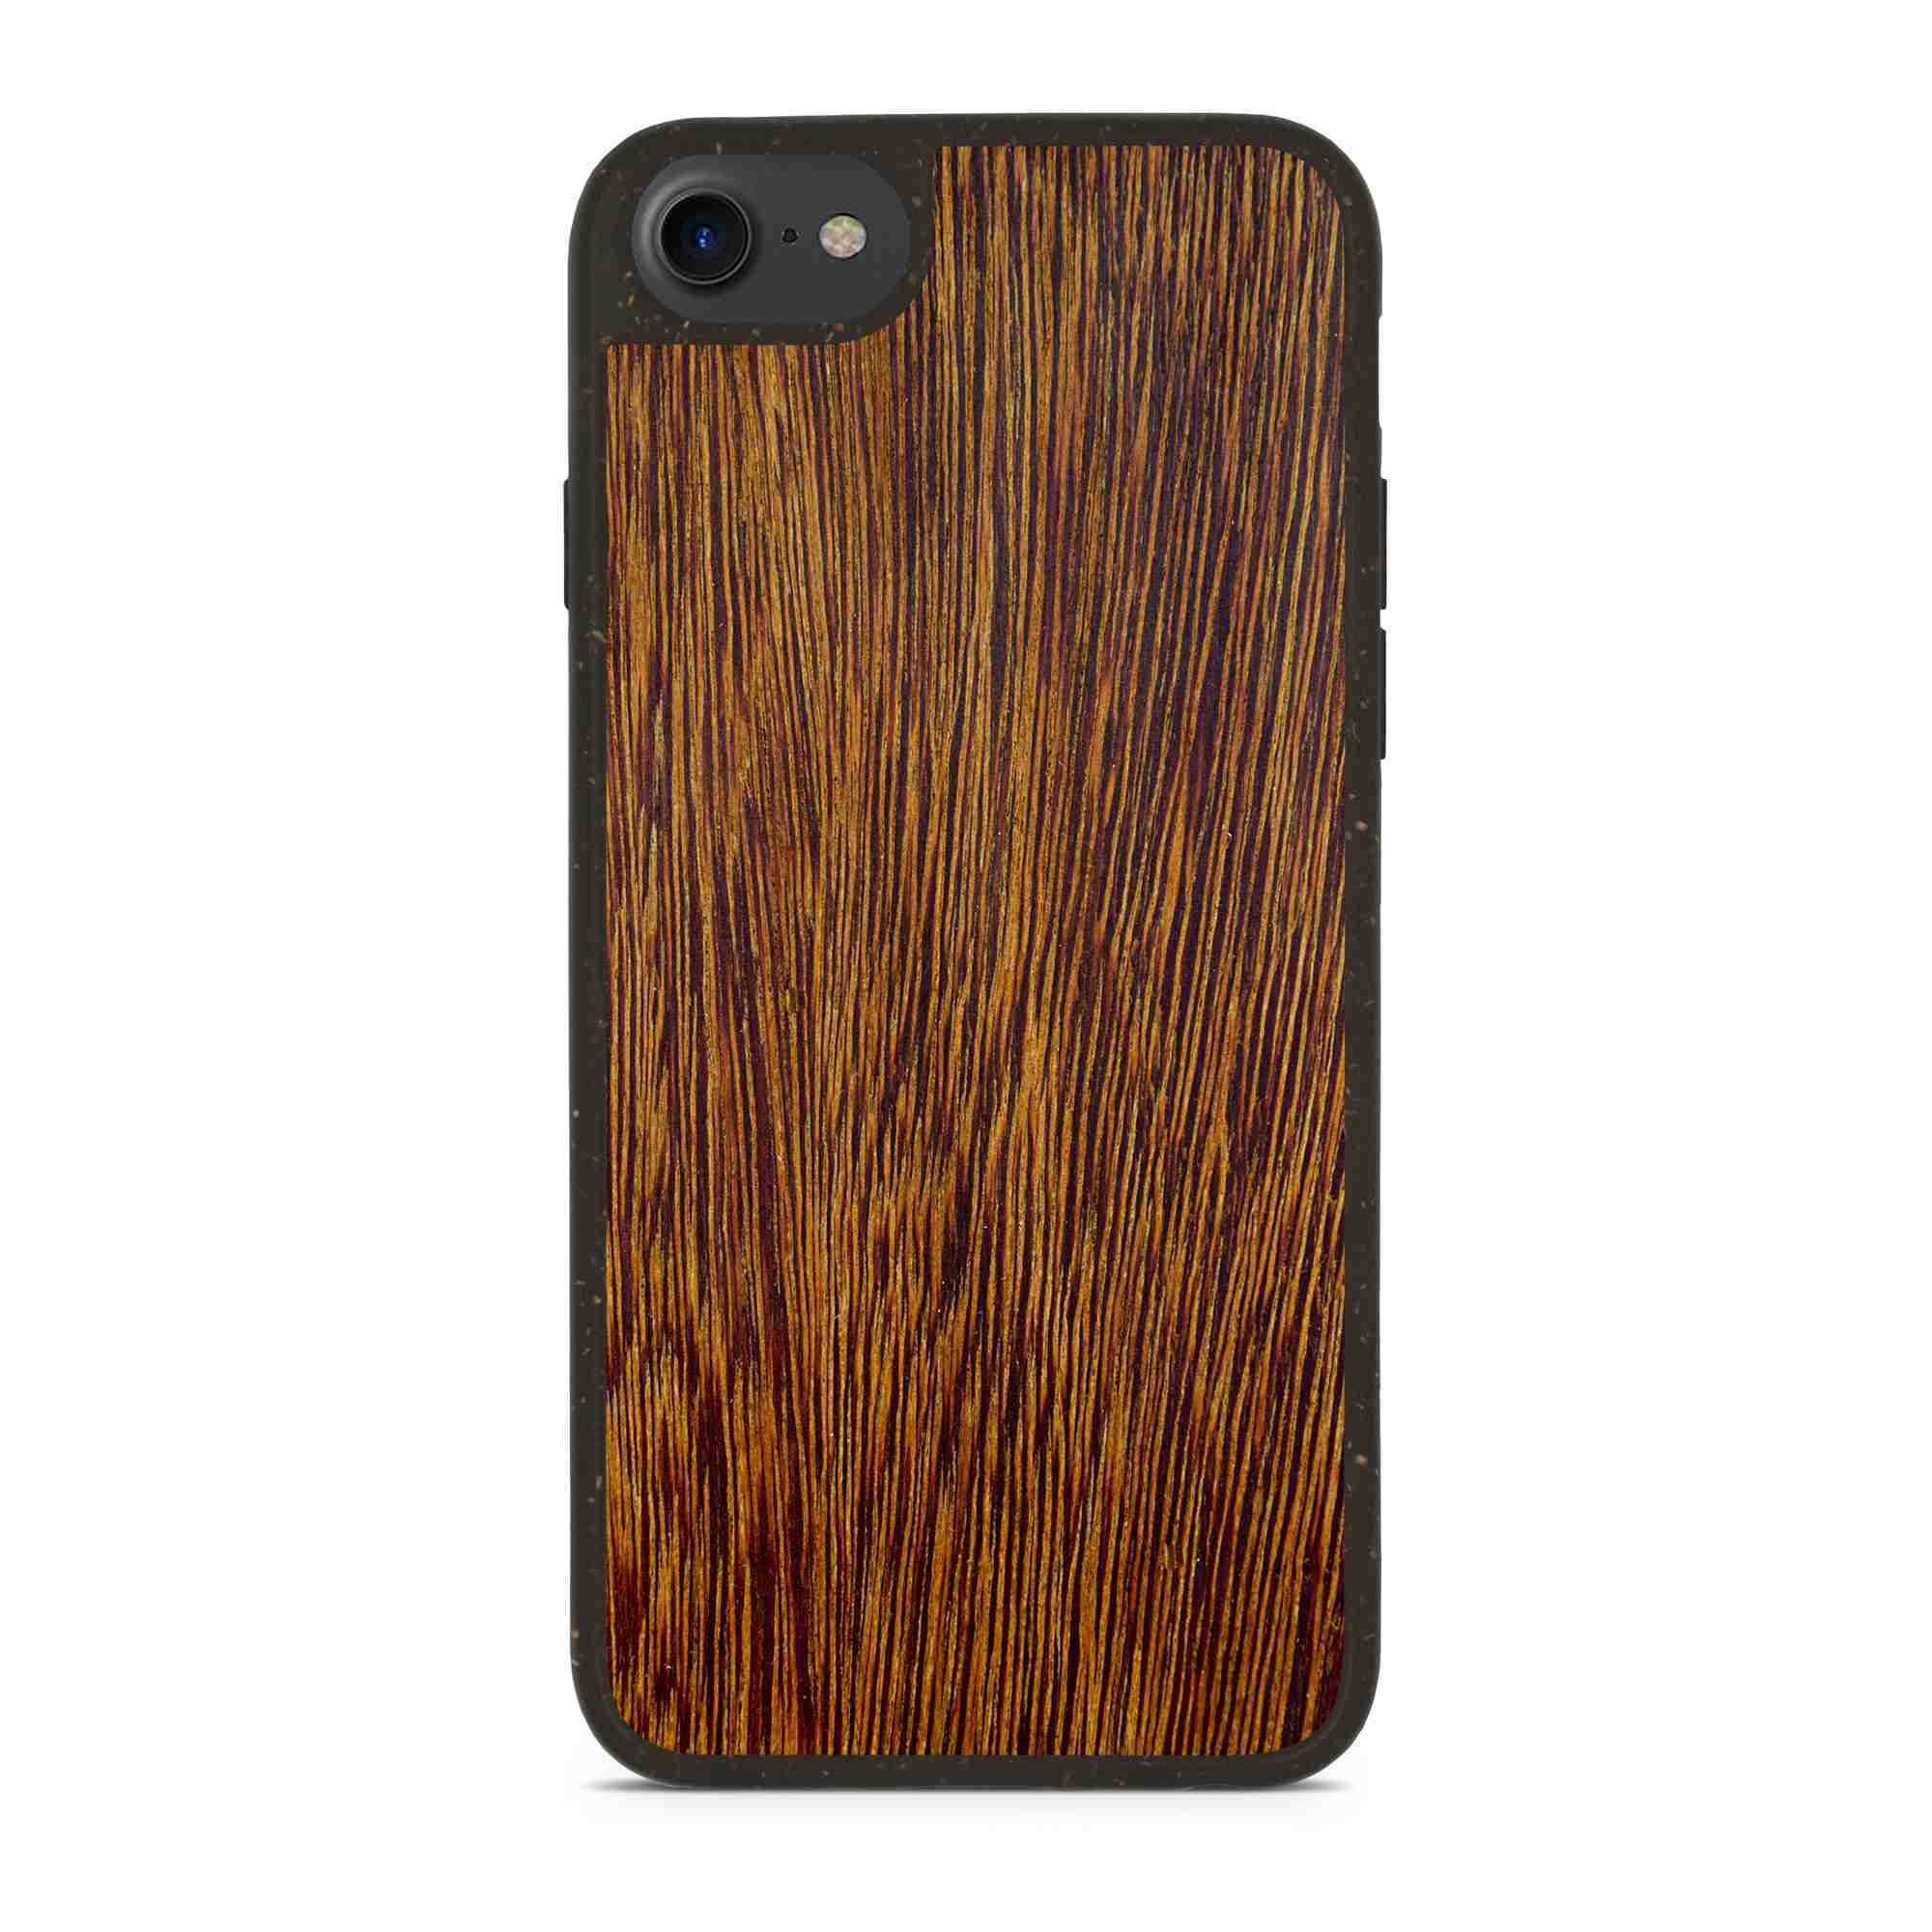 Biologisch abbaubare iPhone 7 Ziricote Holz Handyhülle